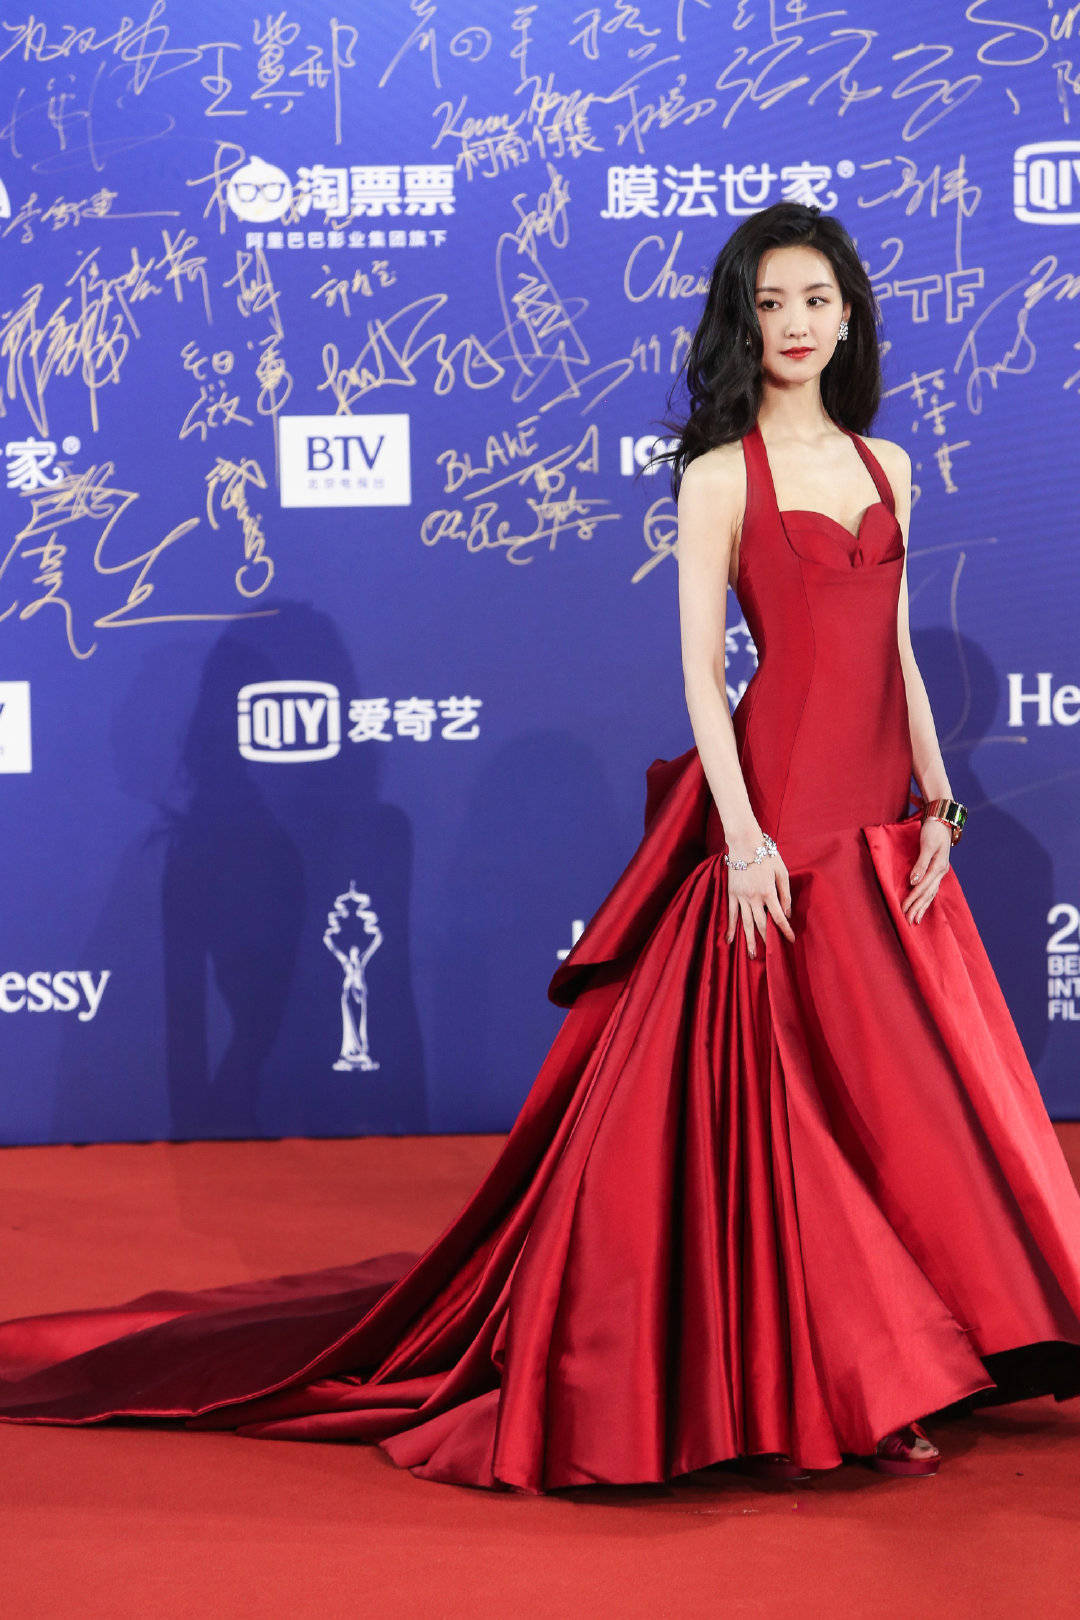 惊呆了,陈都灵的港风造型加上一身红裙太好看了!